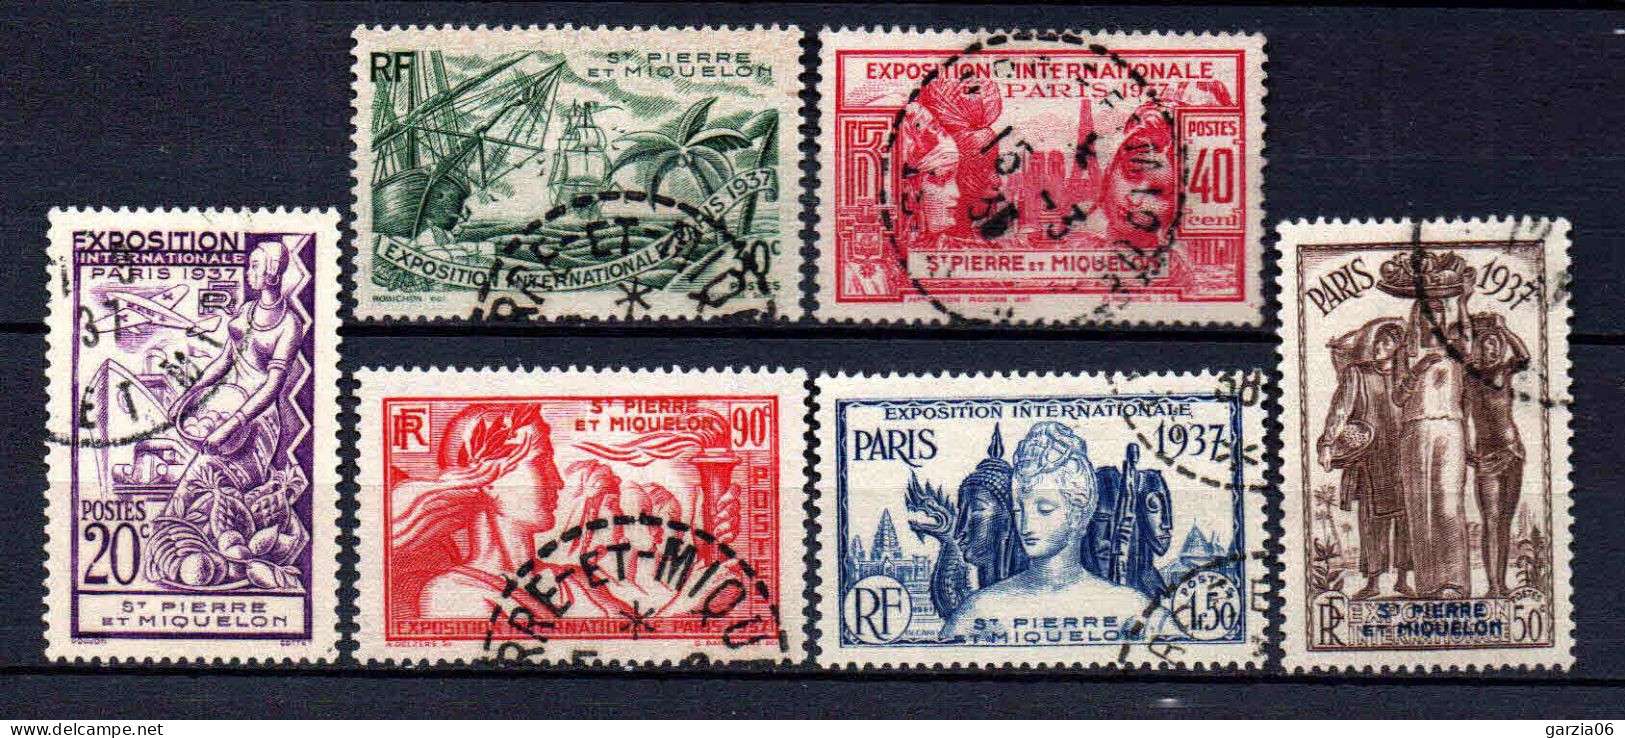 St Pierre Et Miquelon - 1937 - Exposition Internationale De Paris - N° 160 à 165 - Oblit - Used - Usati